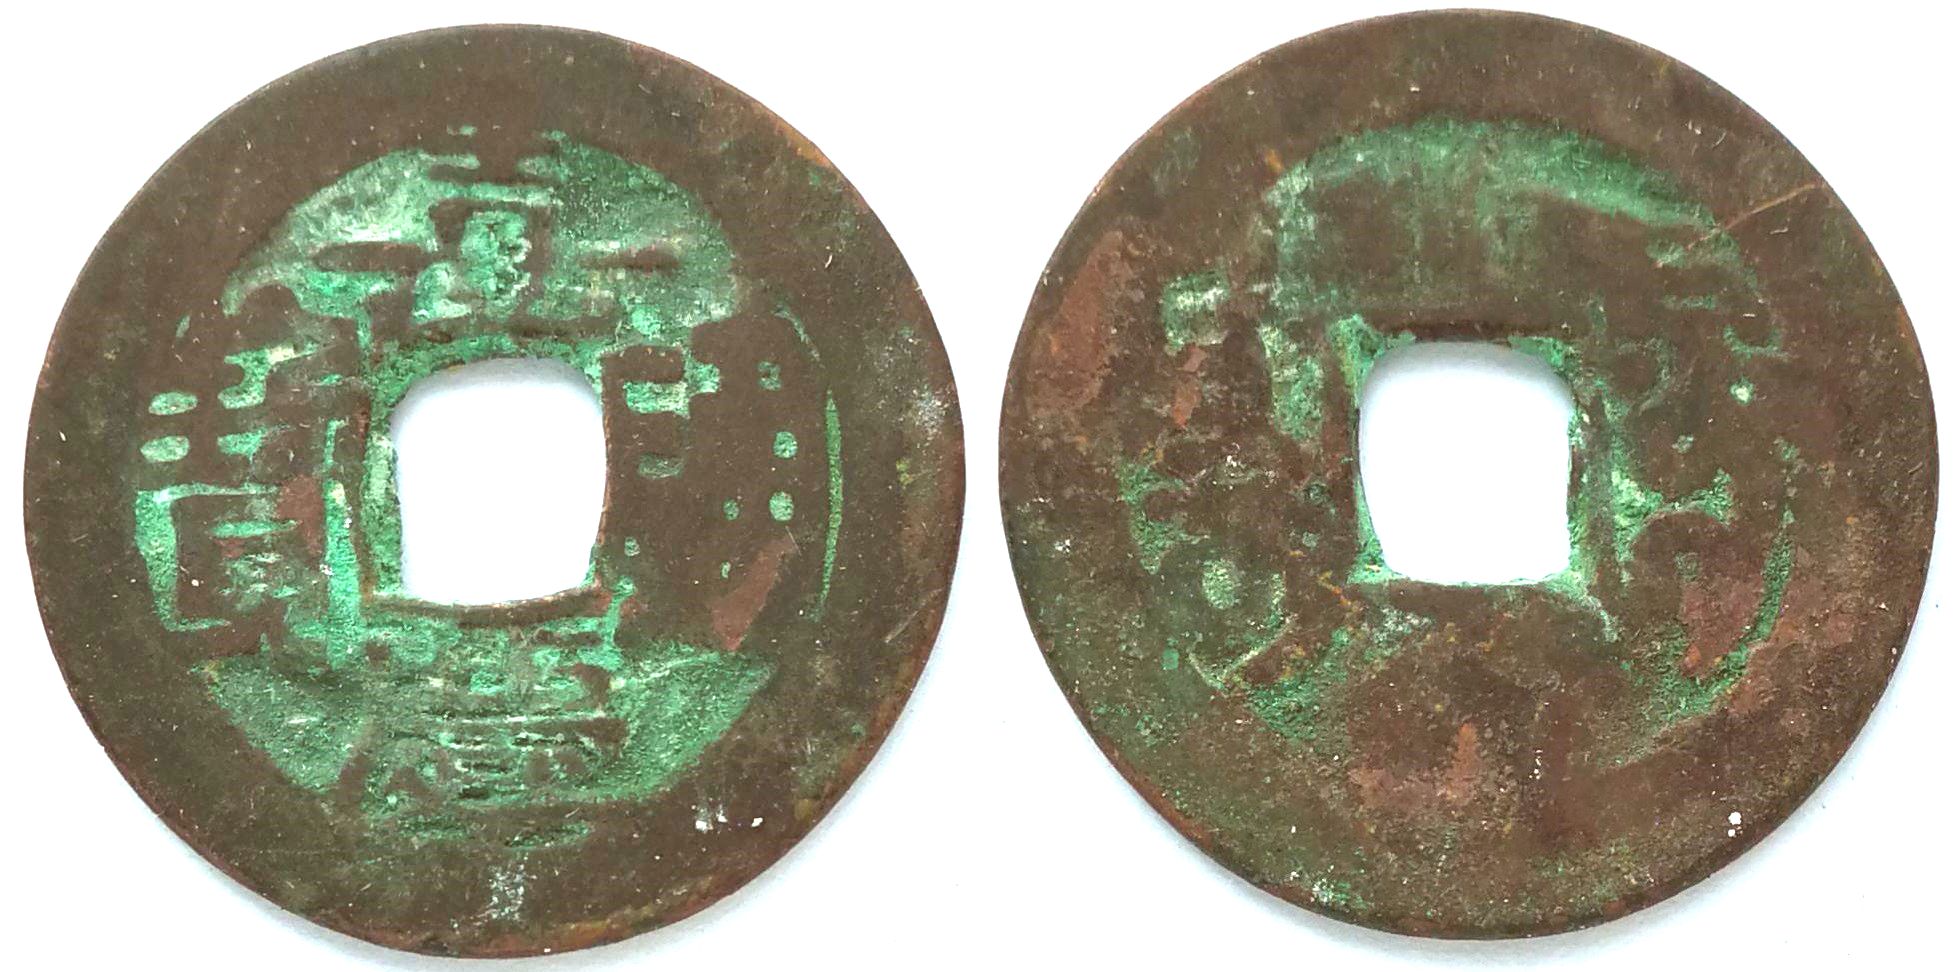 XJ2055, Sinkiang Red Coin, Jia-Qing Tong-Bao, Aksu Mint, China 1796-1820